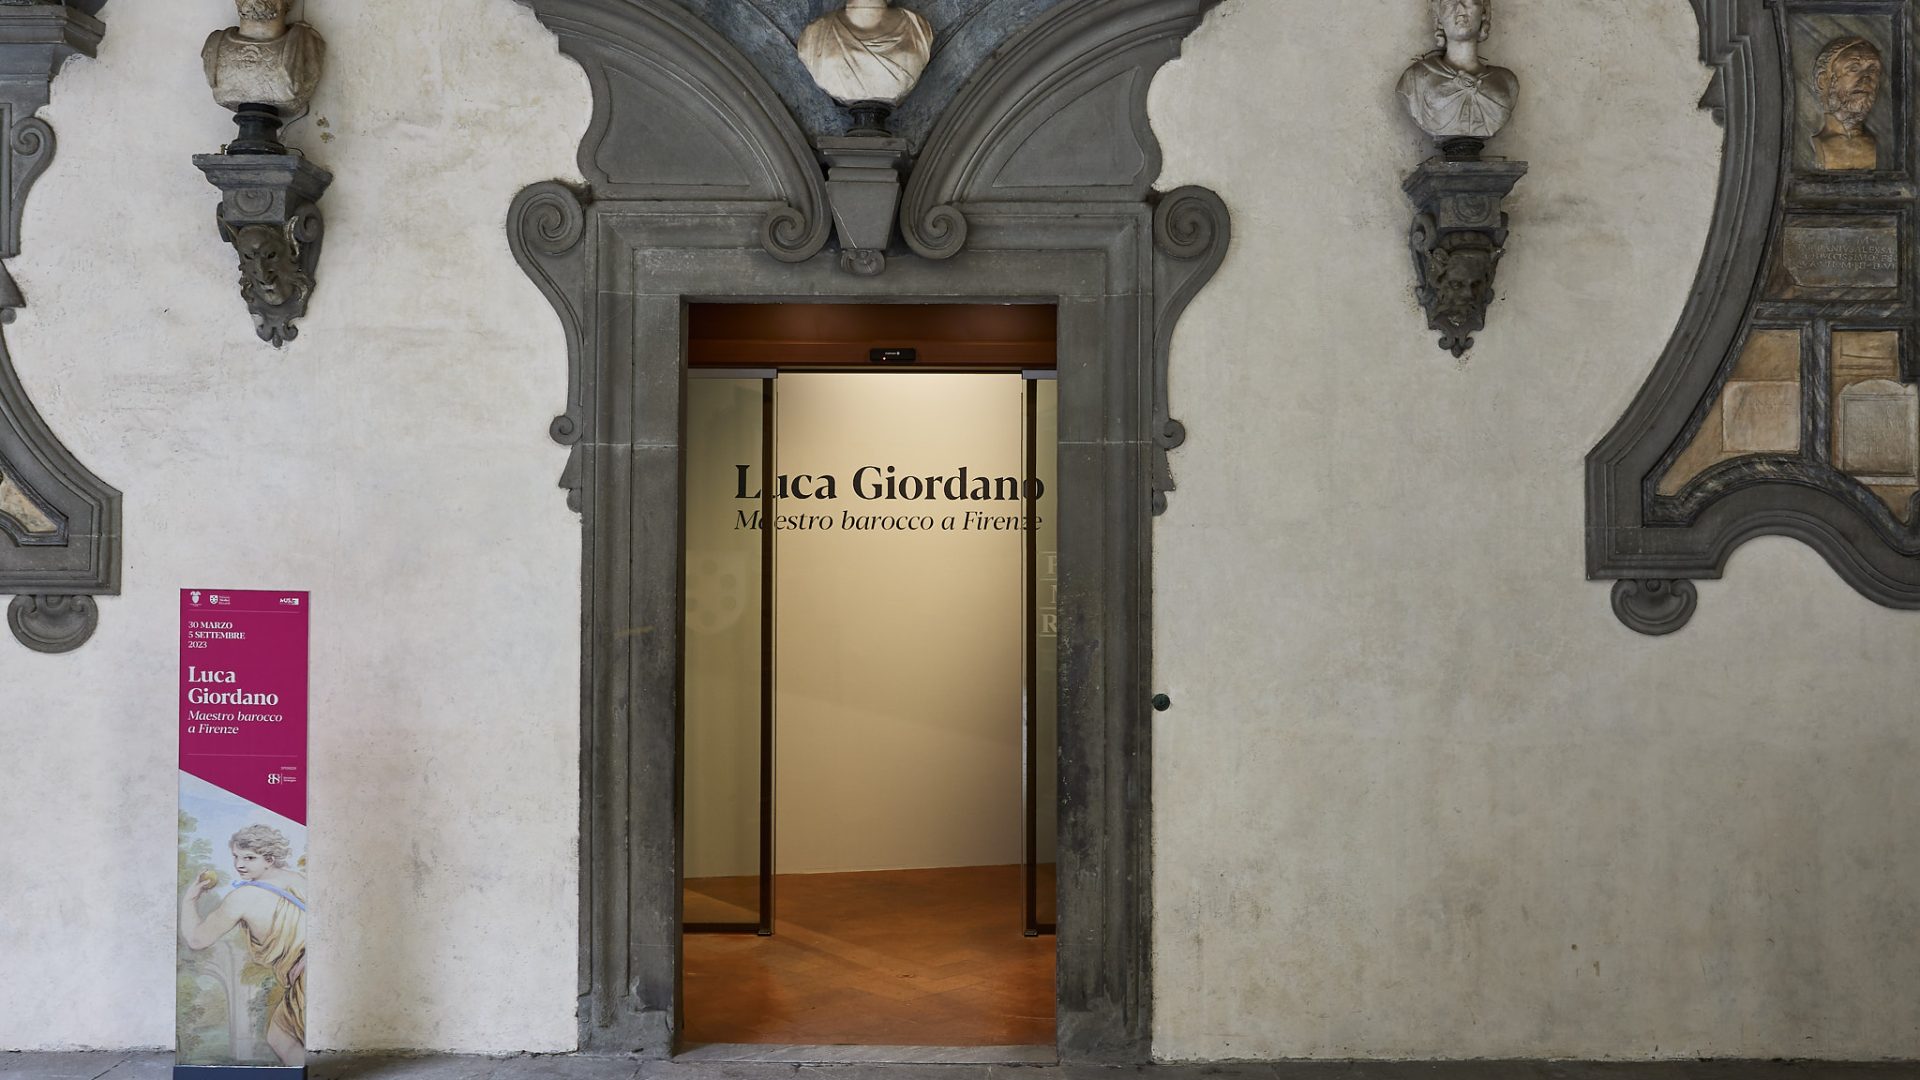 Luca Giordano. Maestro barocco a Firenze. Entrée à l’exposition